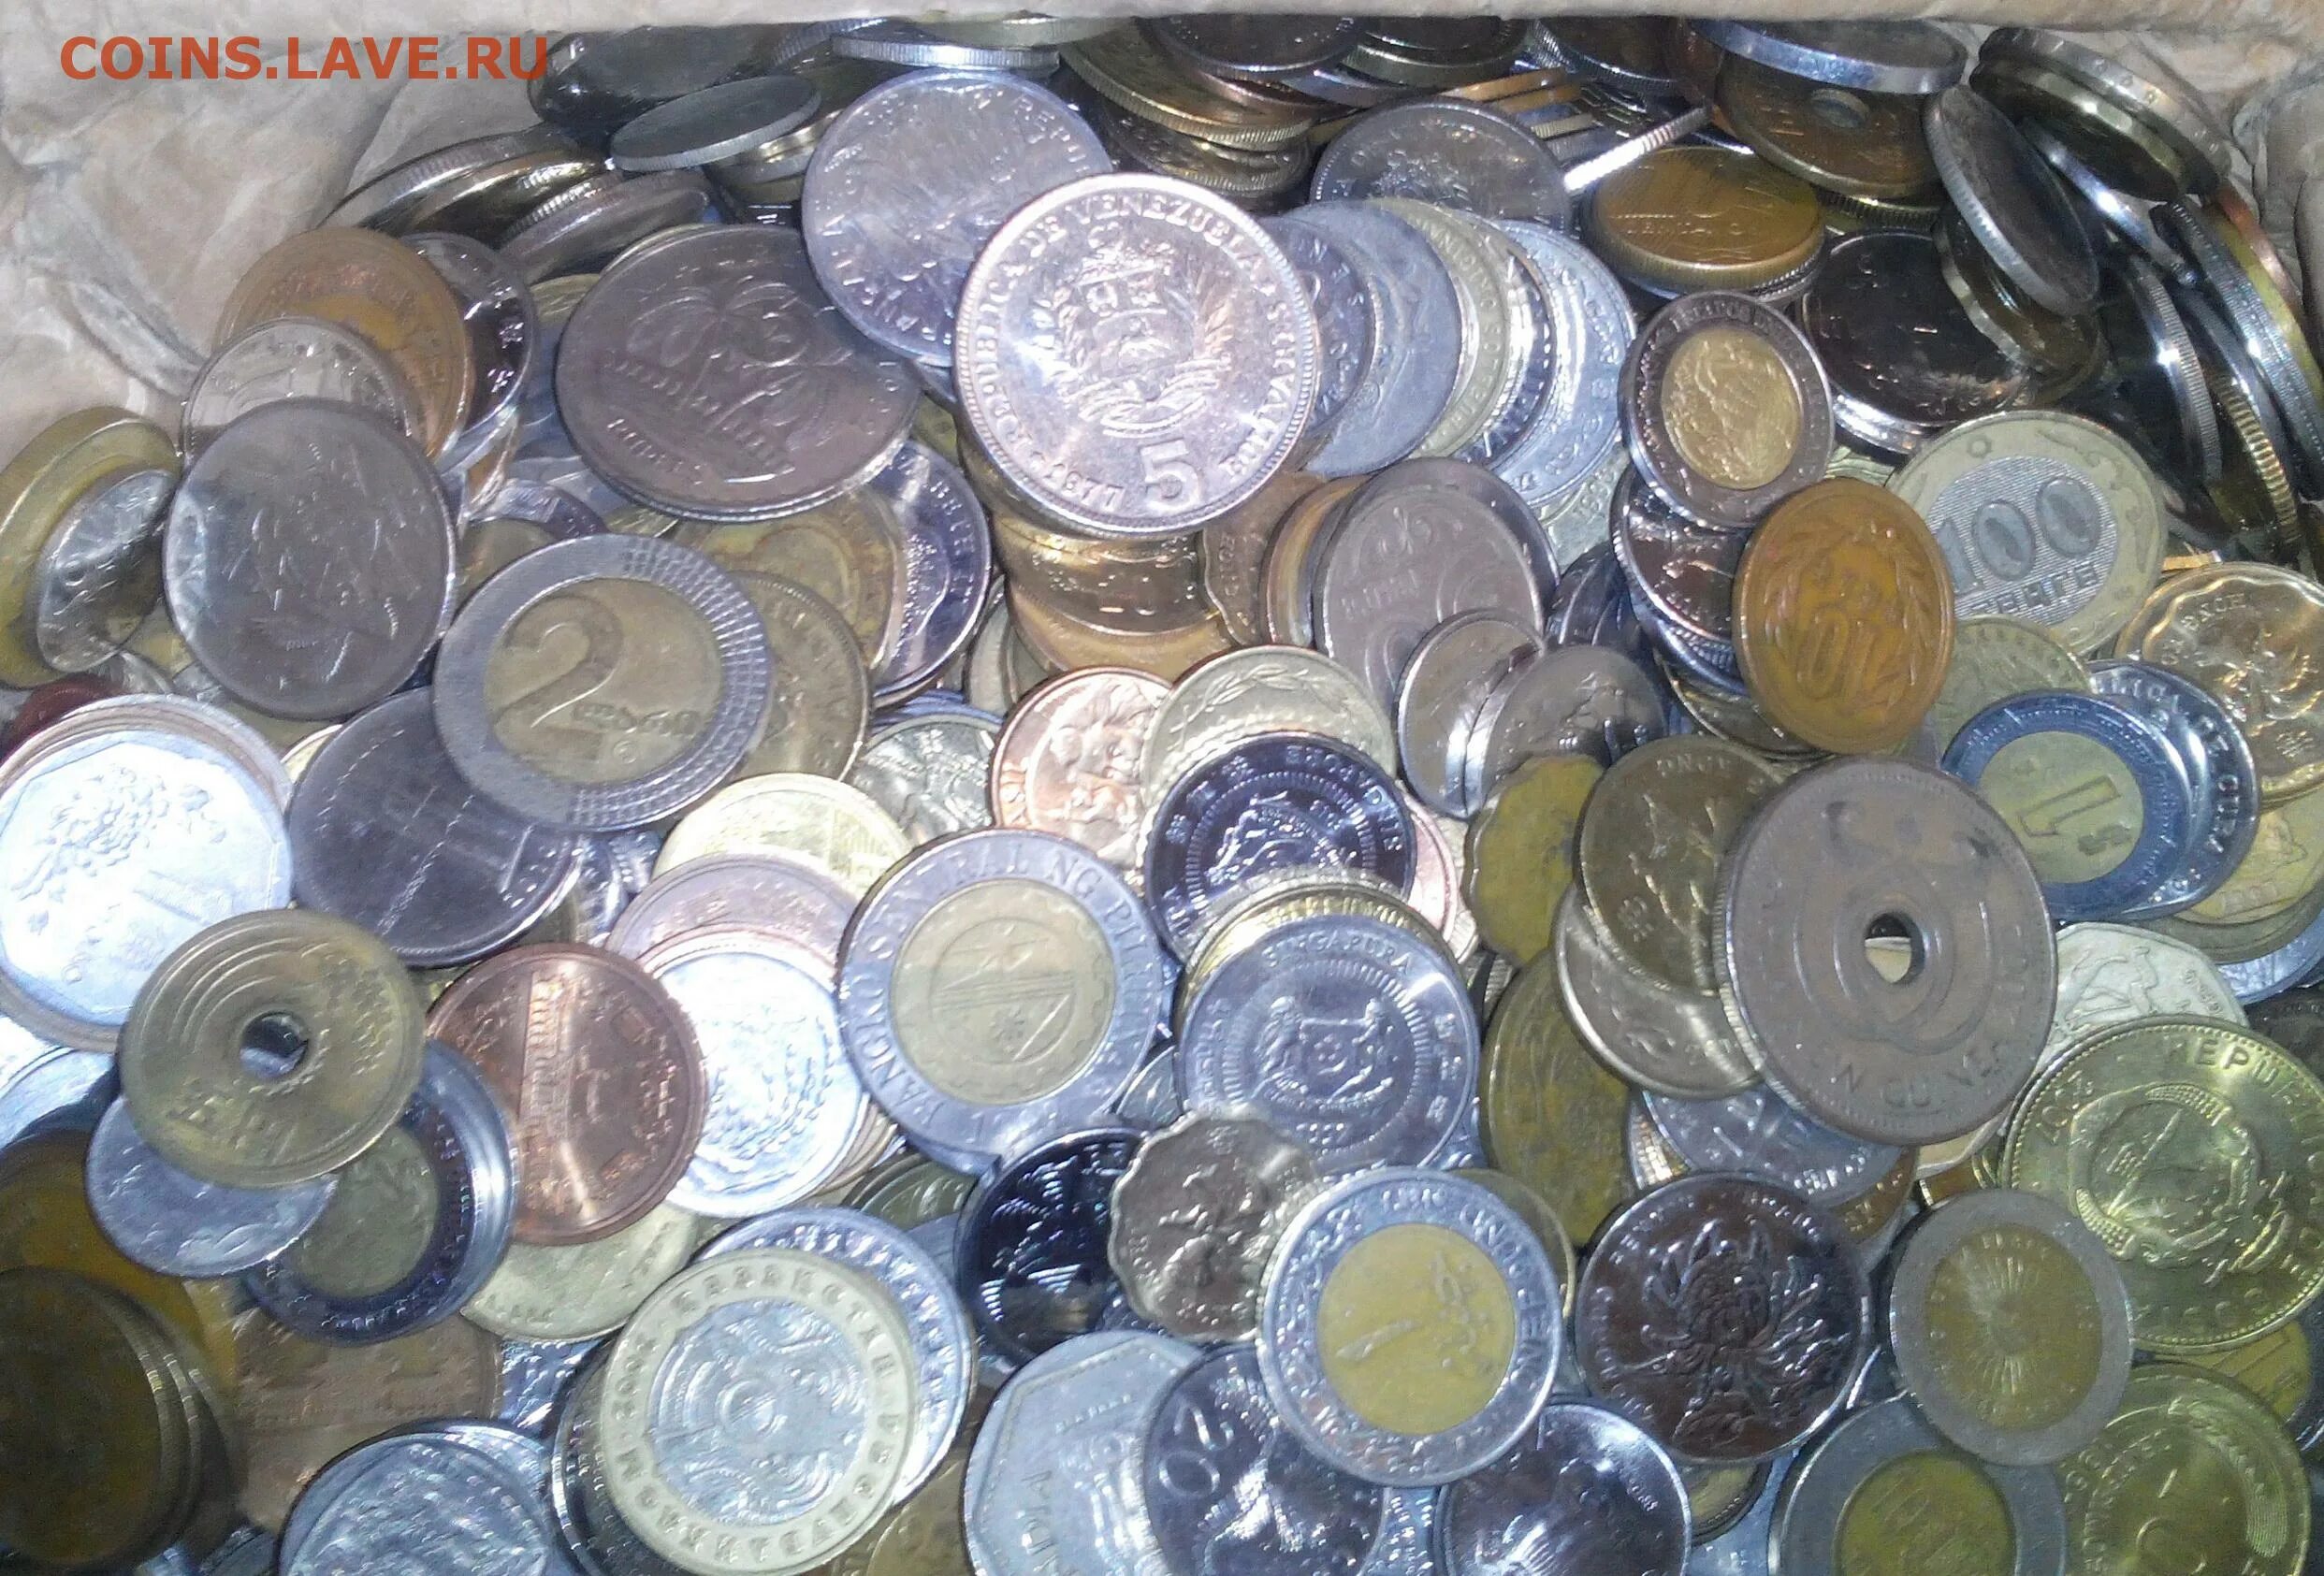 Купить монеты на вес. Иностранные монеты на вес. Монеты экзотика на вес. Килограмм монет. Вес монет.